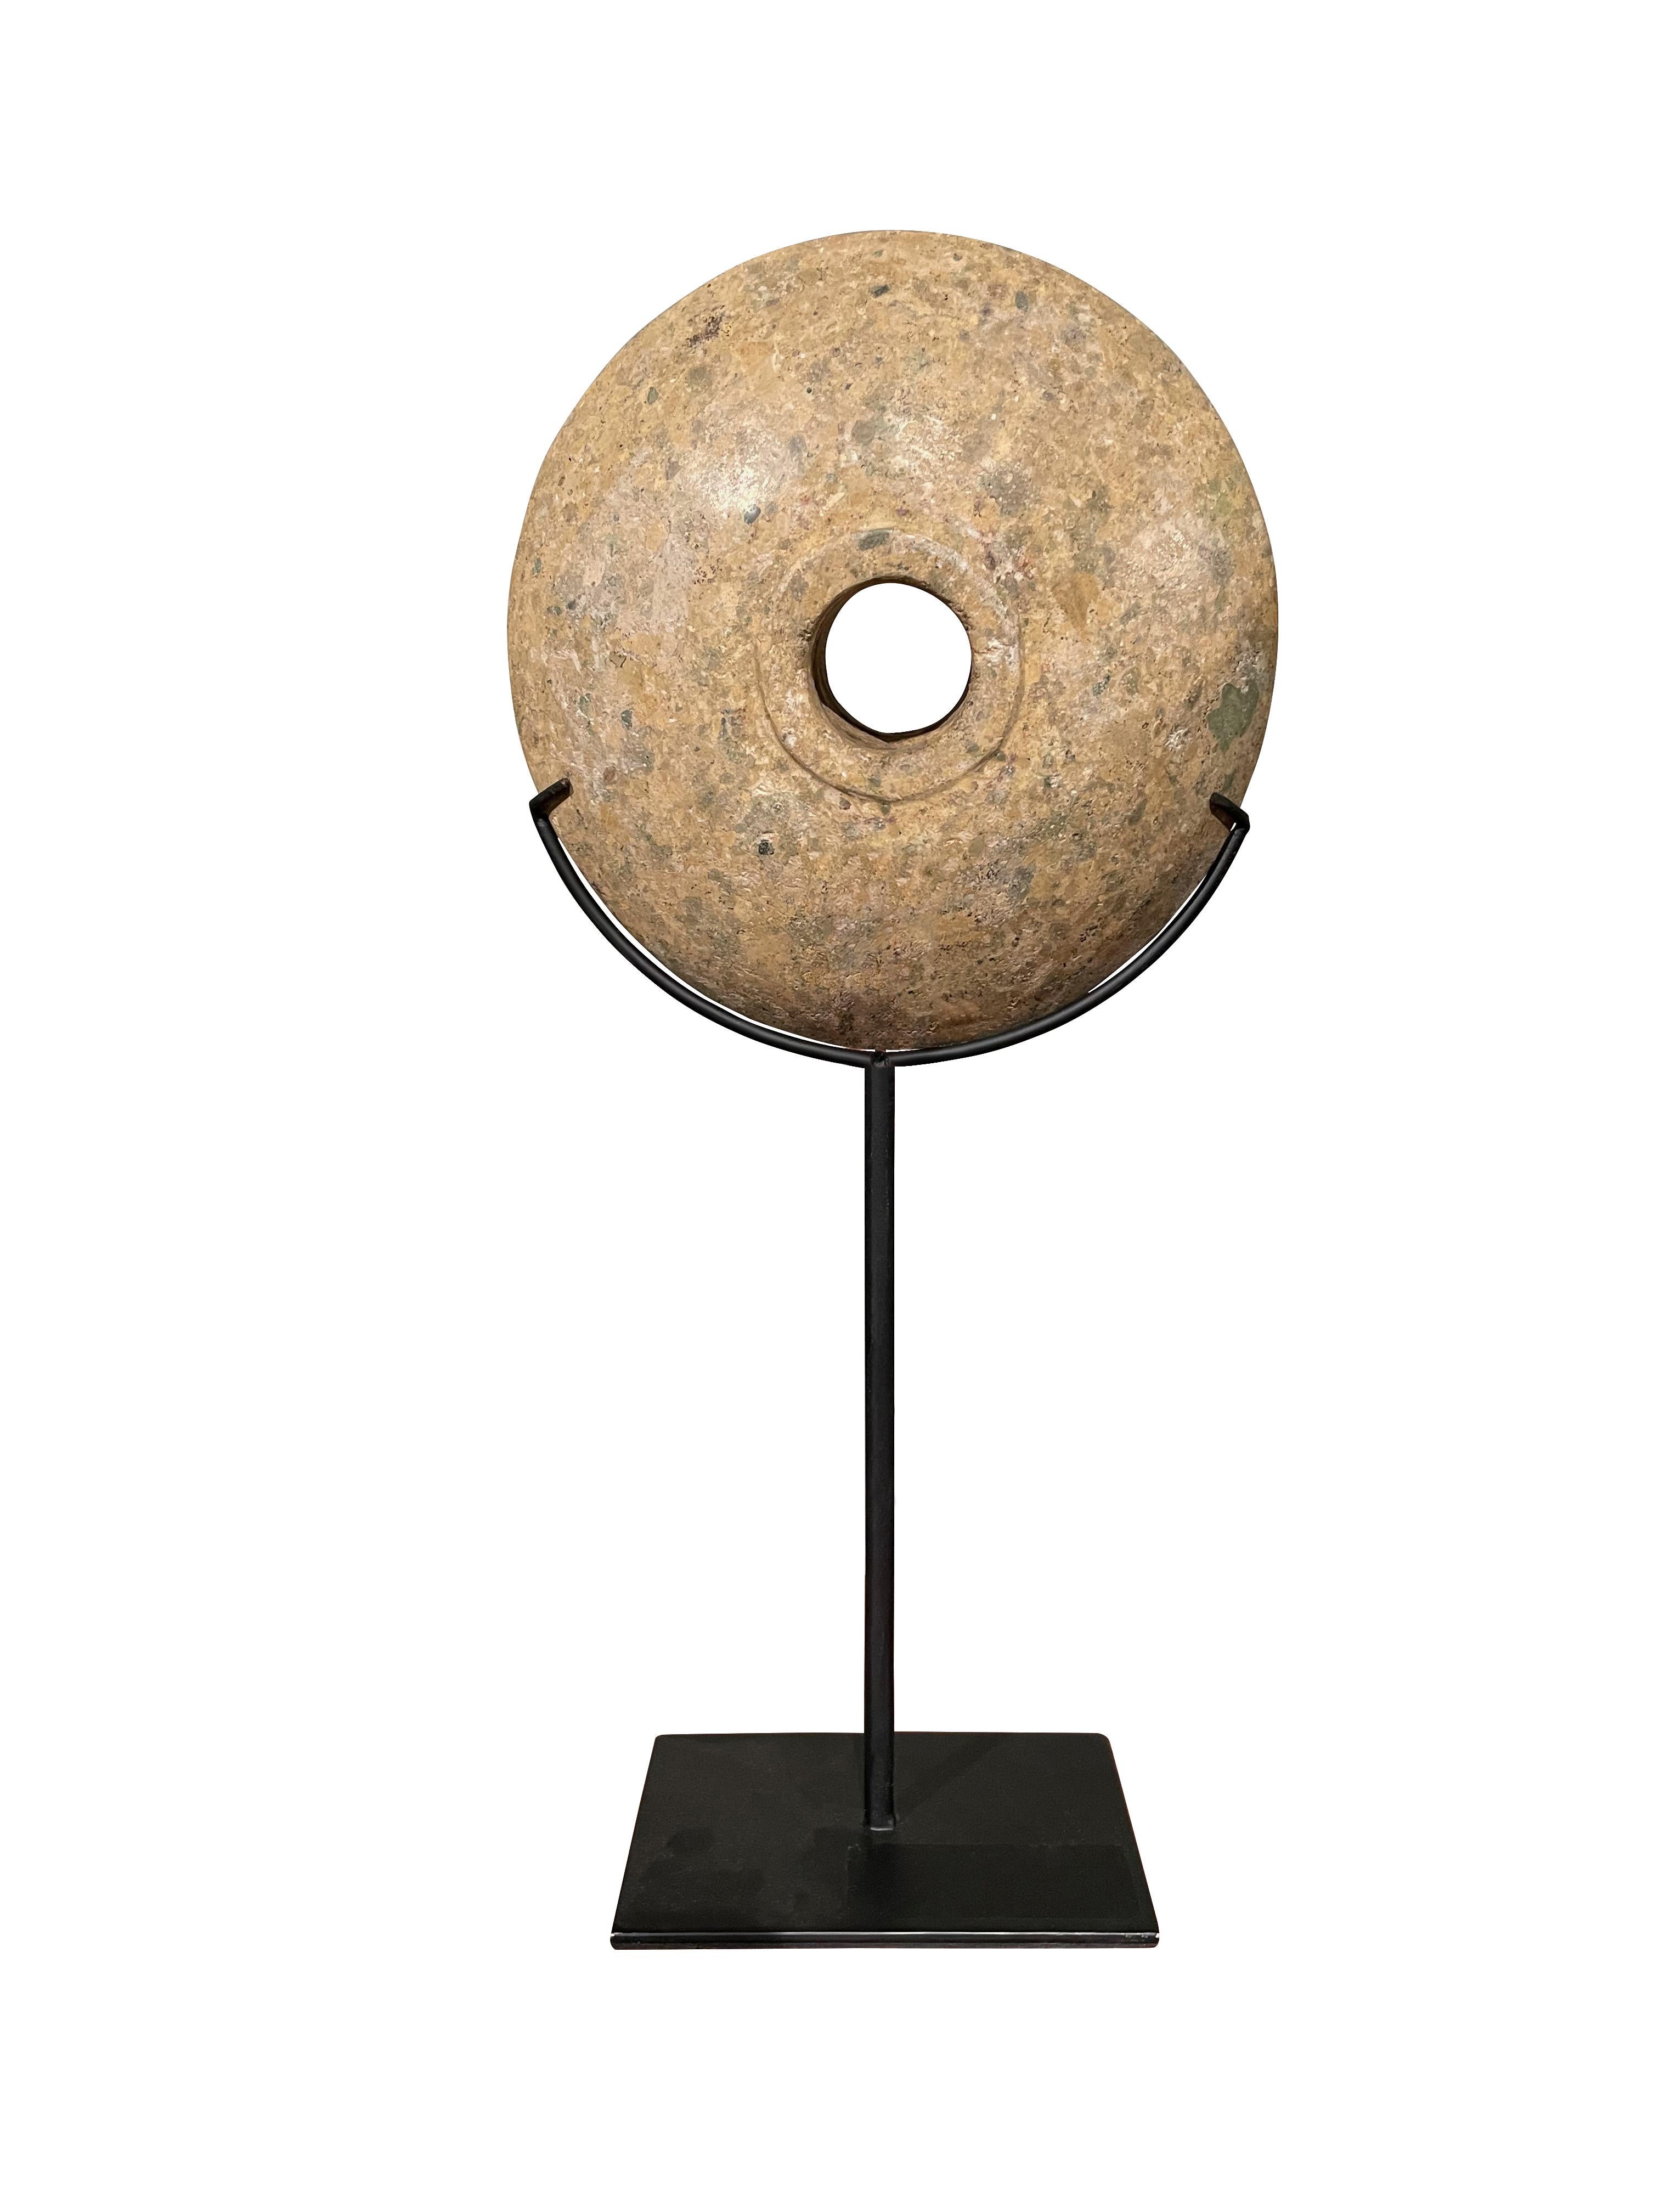 Ensemble chinois contemporain de deux disques en pierre sur des supports en métal.
Finition adoucie et lisse.
Une pierre mesure 6